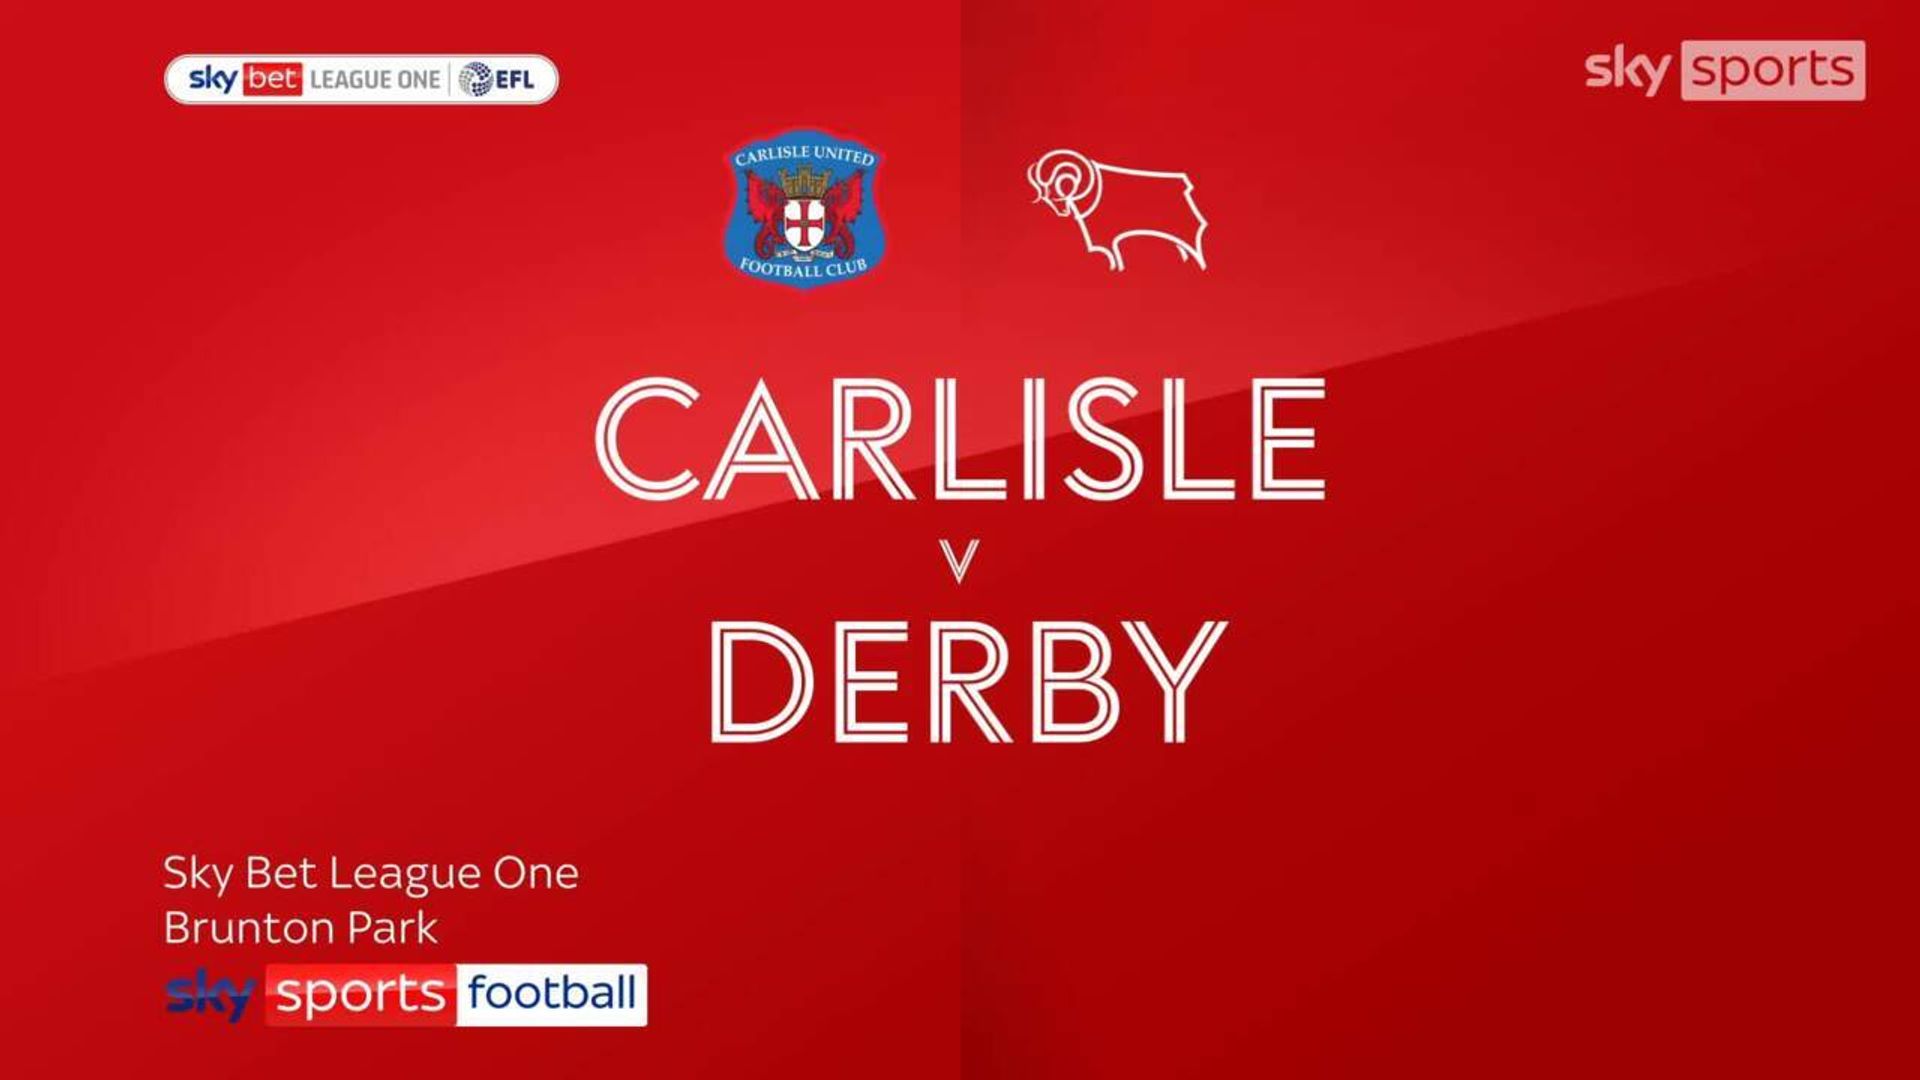 Carlisle Utd 0-2 Derby County